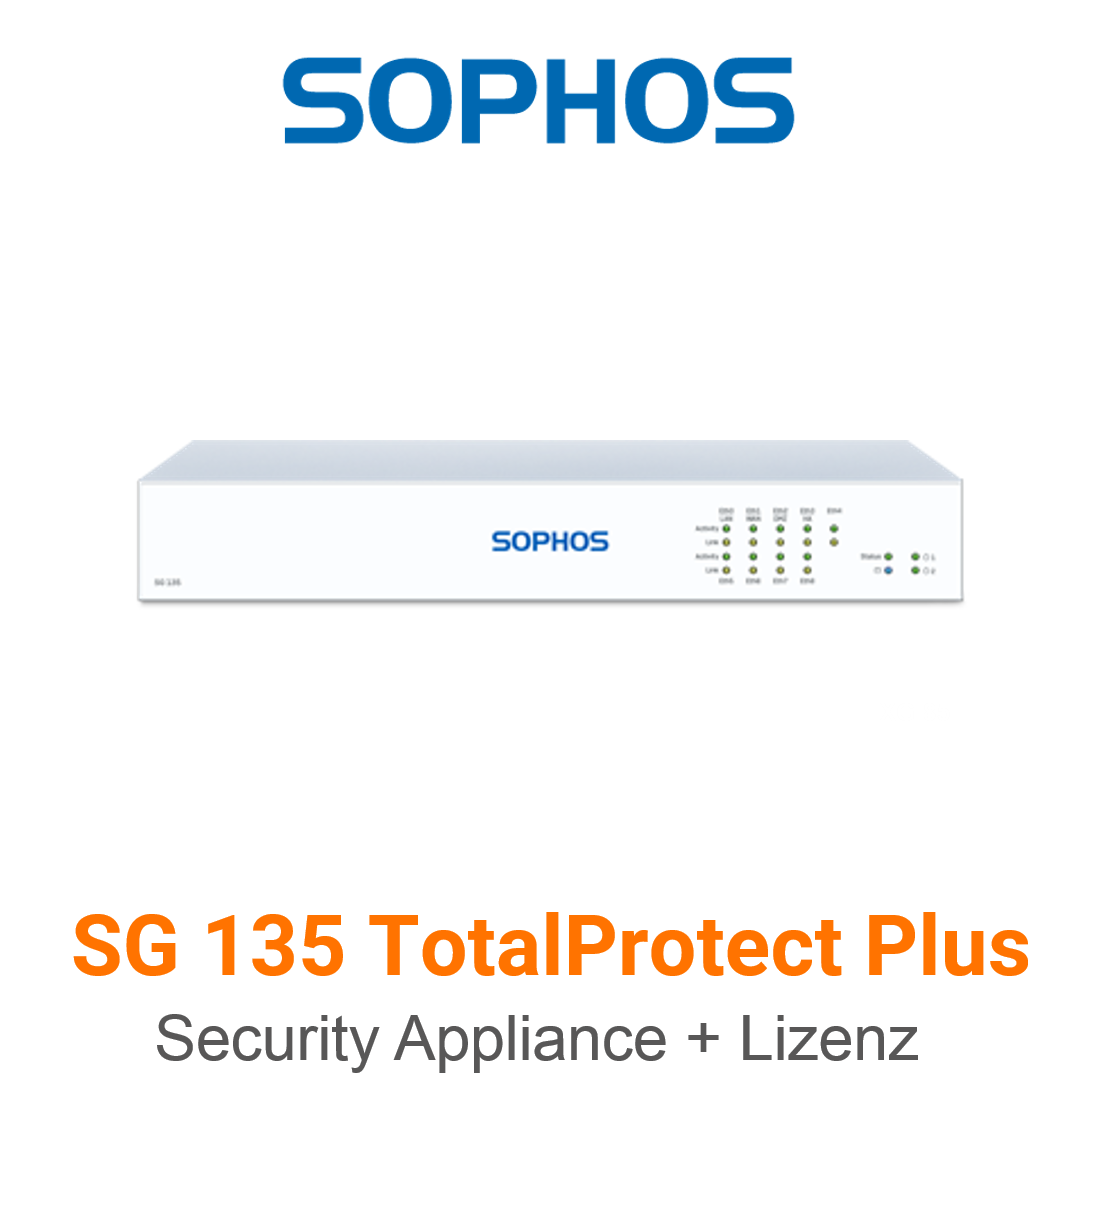 Sophos SG 135 TotalProtect Plus Bundle (Hardware + Lizenz)